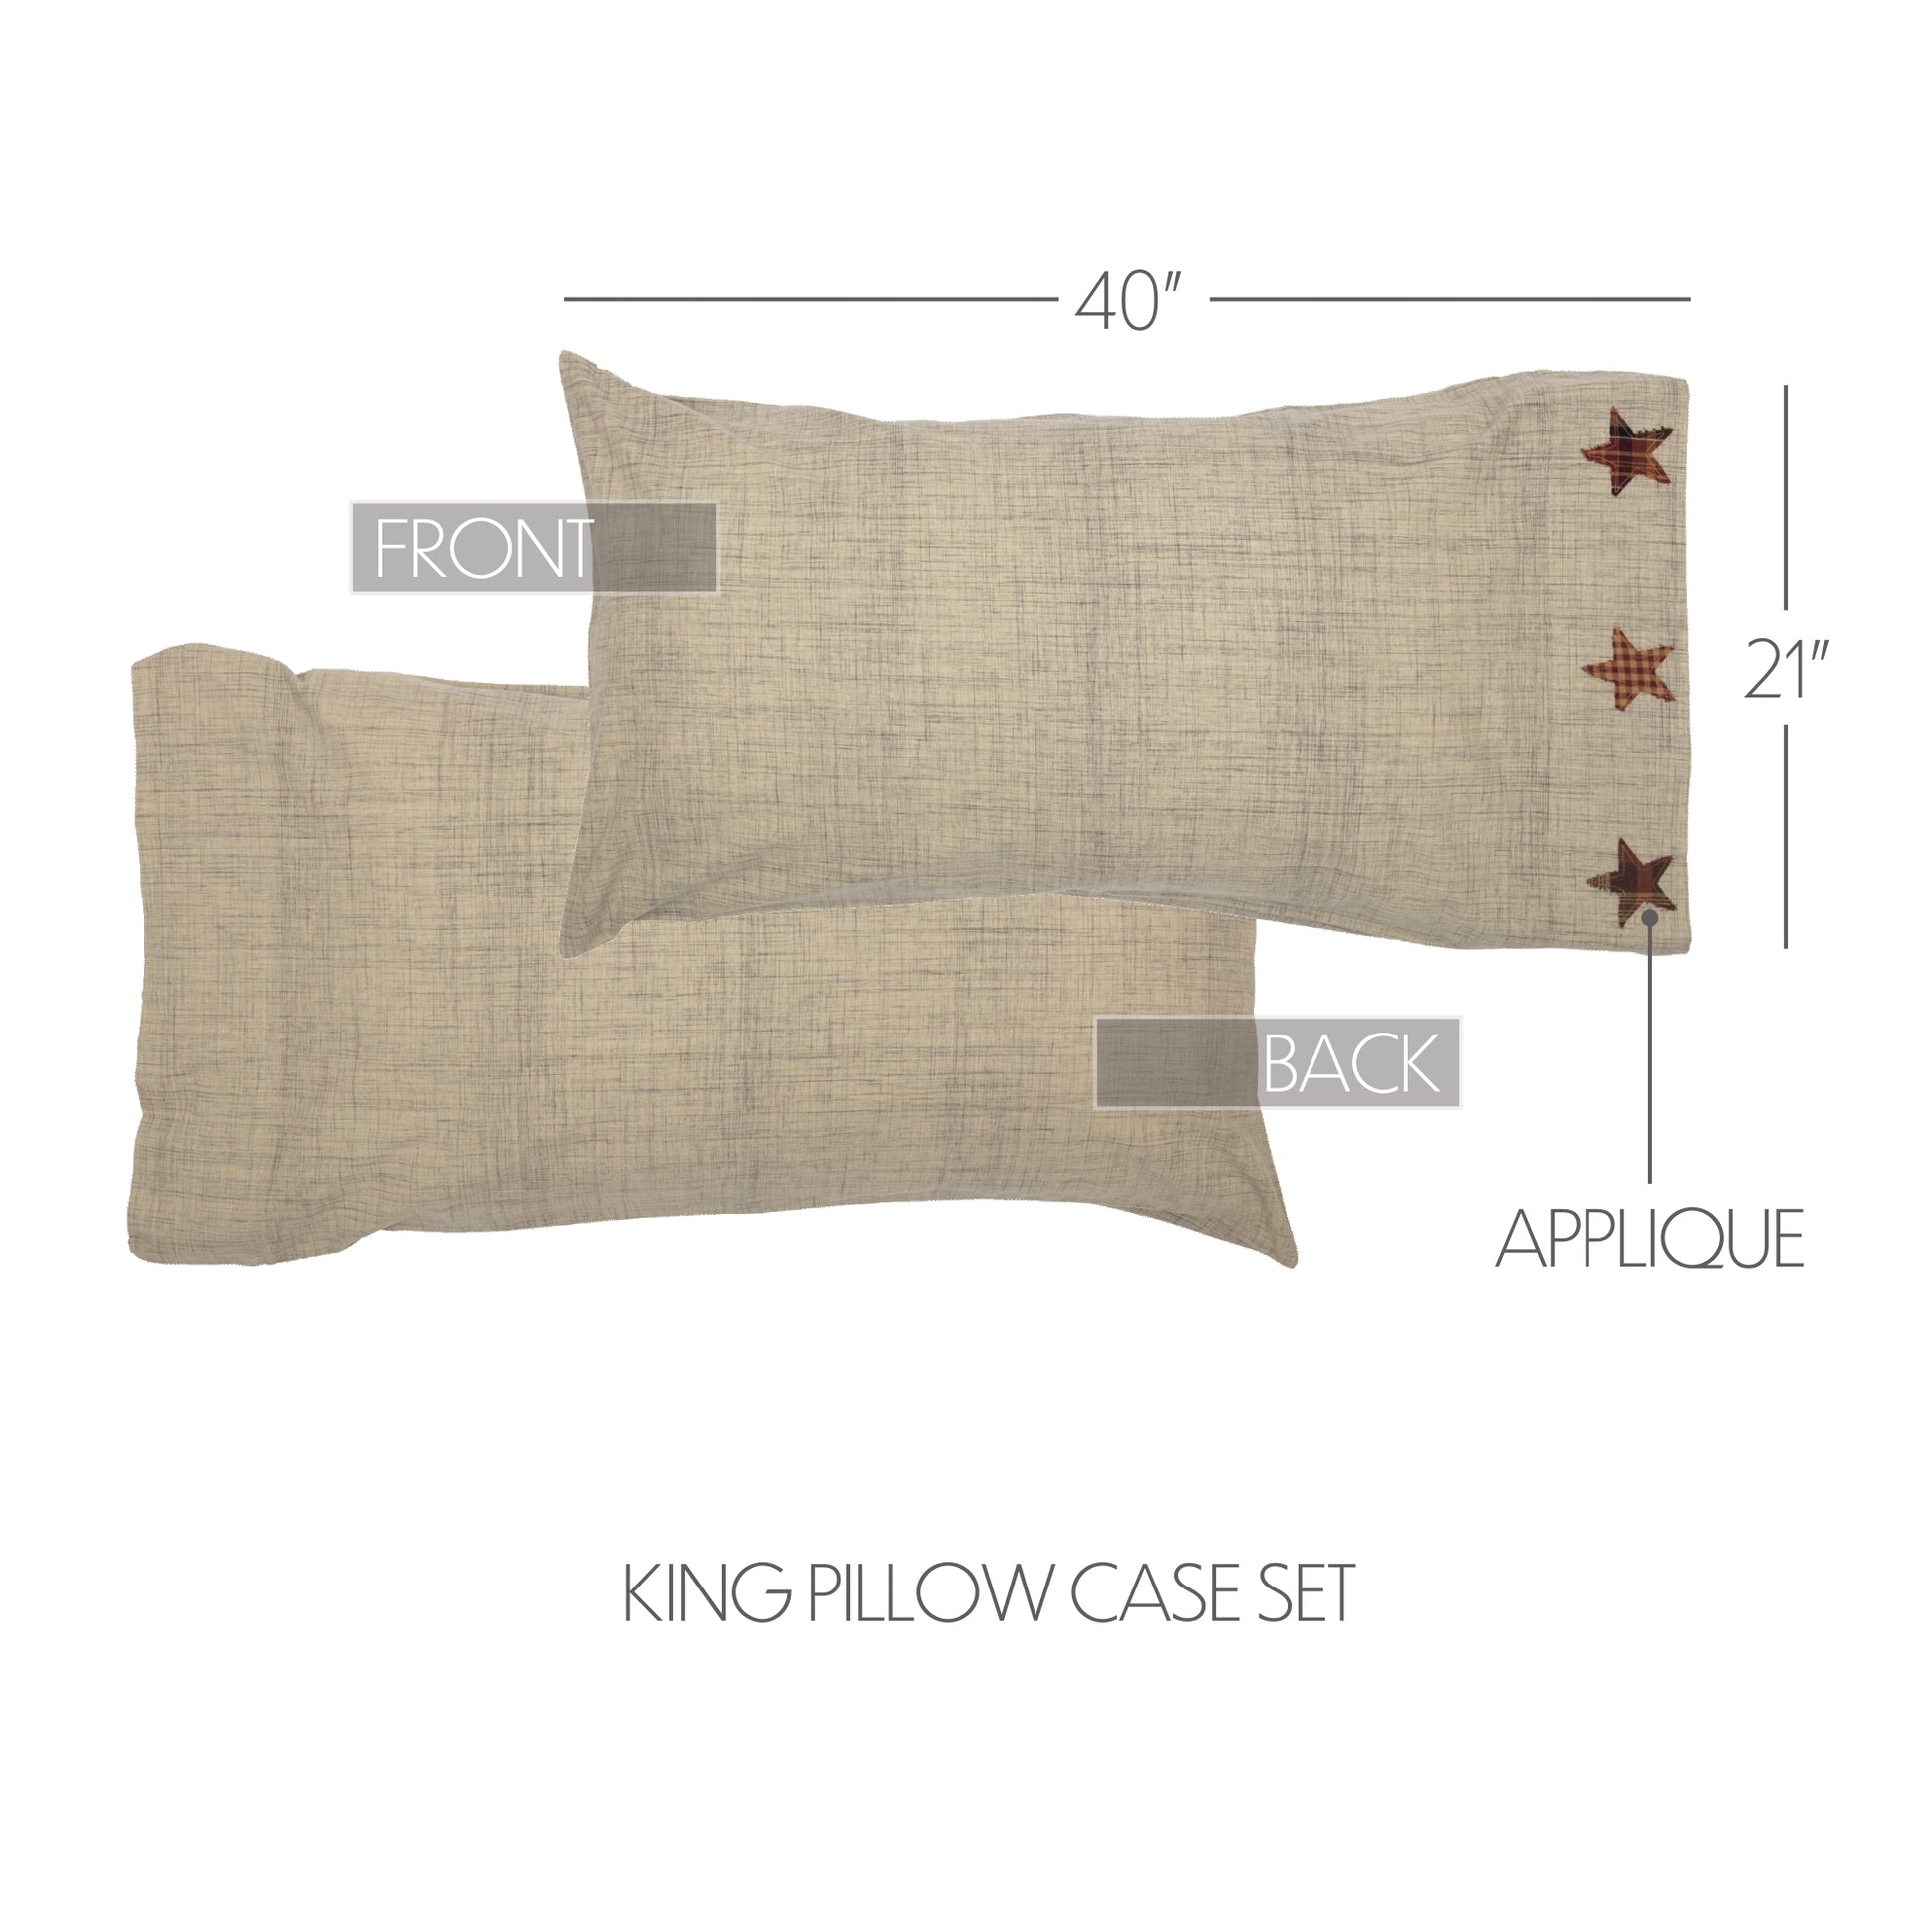 50802-Abilene-Star-King-Pillow-Case-Set-of-2-21x40-image-1